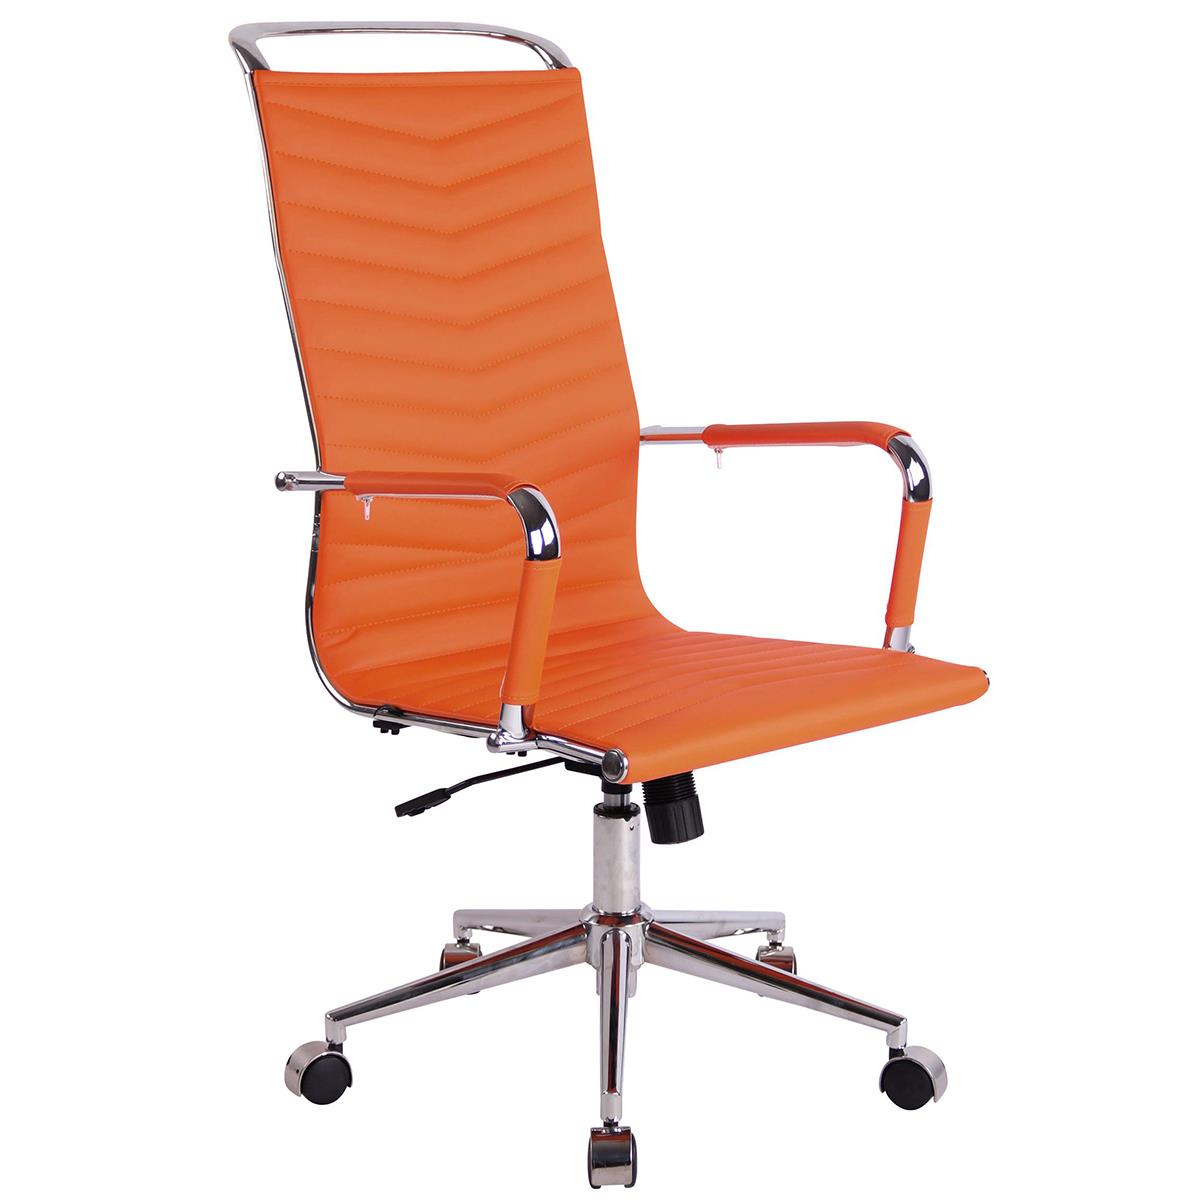 Chaise de Bureau SIGRID, Design Élégant, Dossier Haut, en Cuir Orange